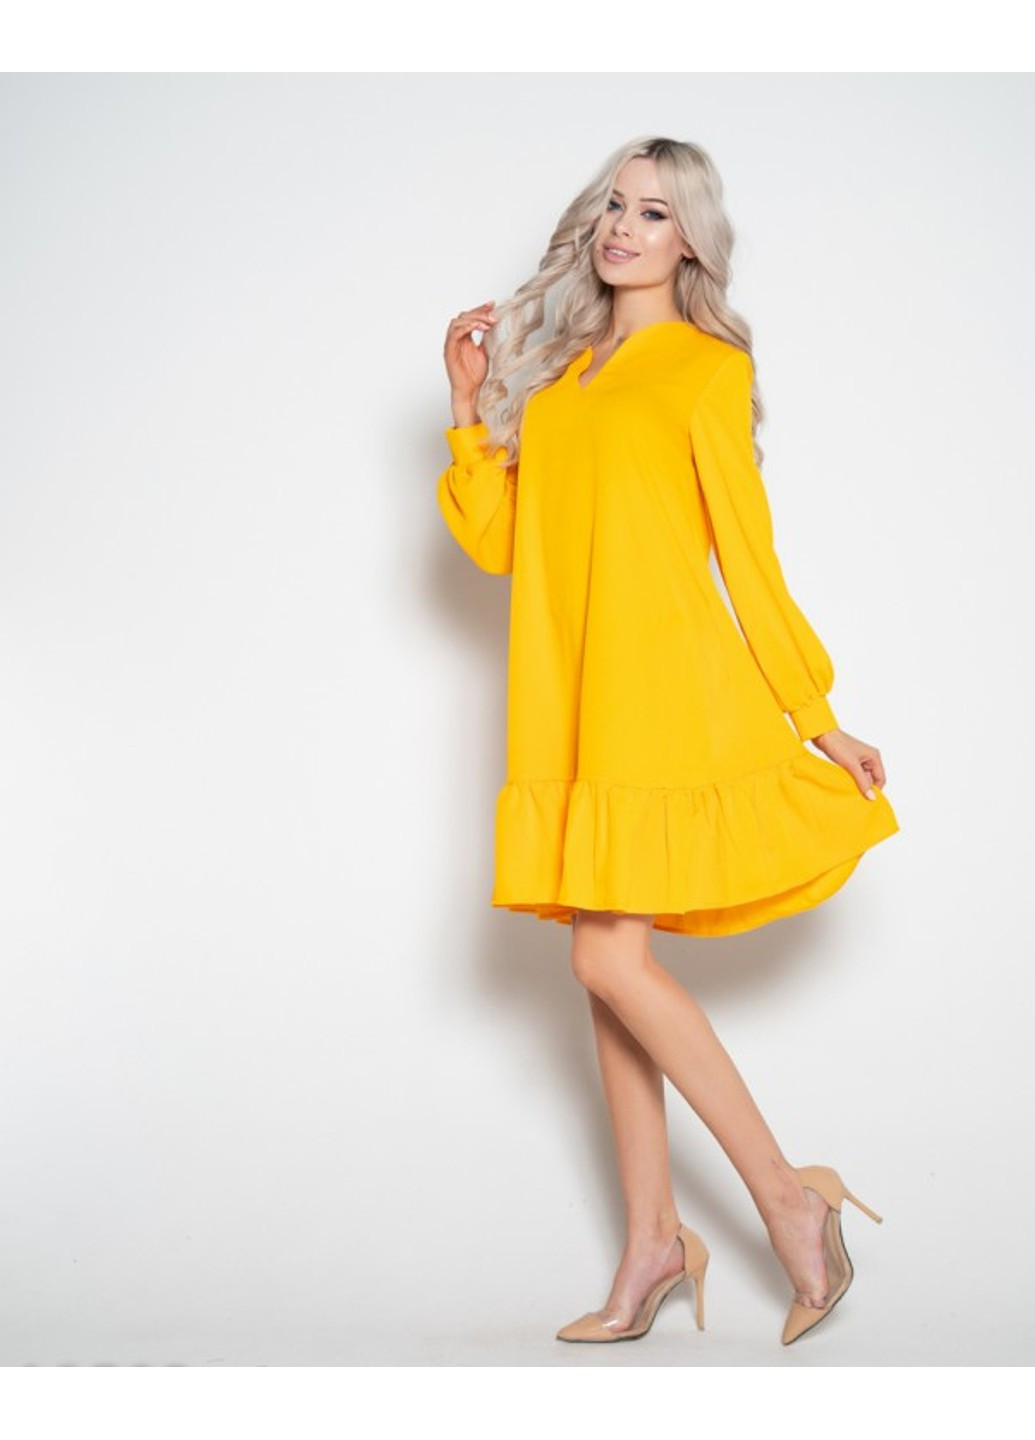 Жовтий повсякденний сукня 10503 xl жовтий ISSA PLUS